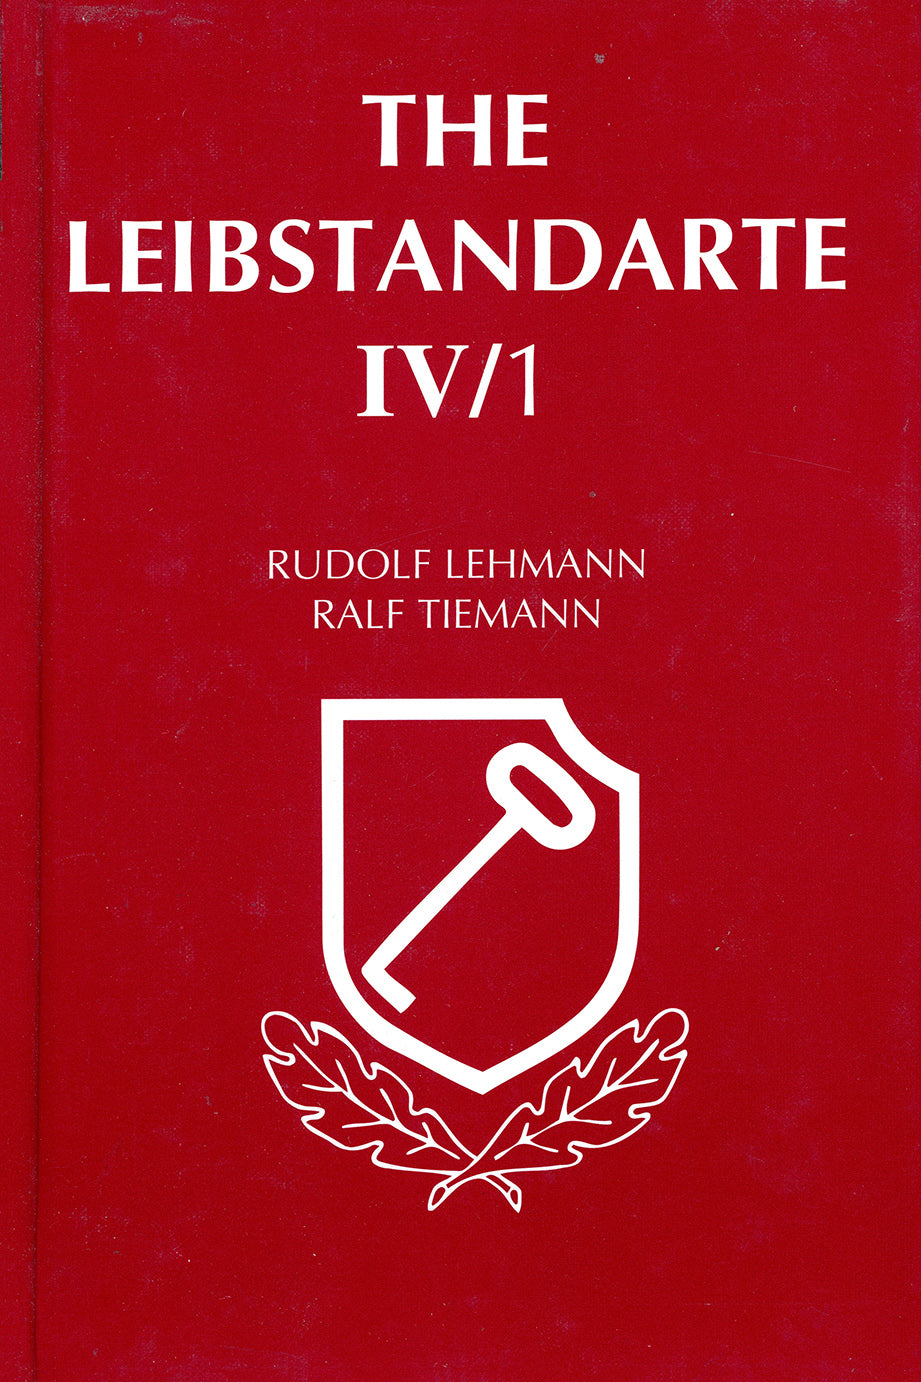 Die Leibstandarte Bd. IV/1 